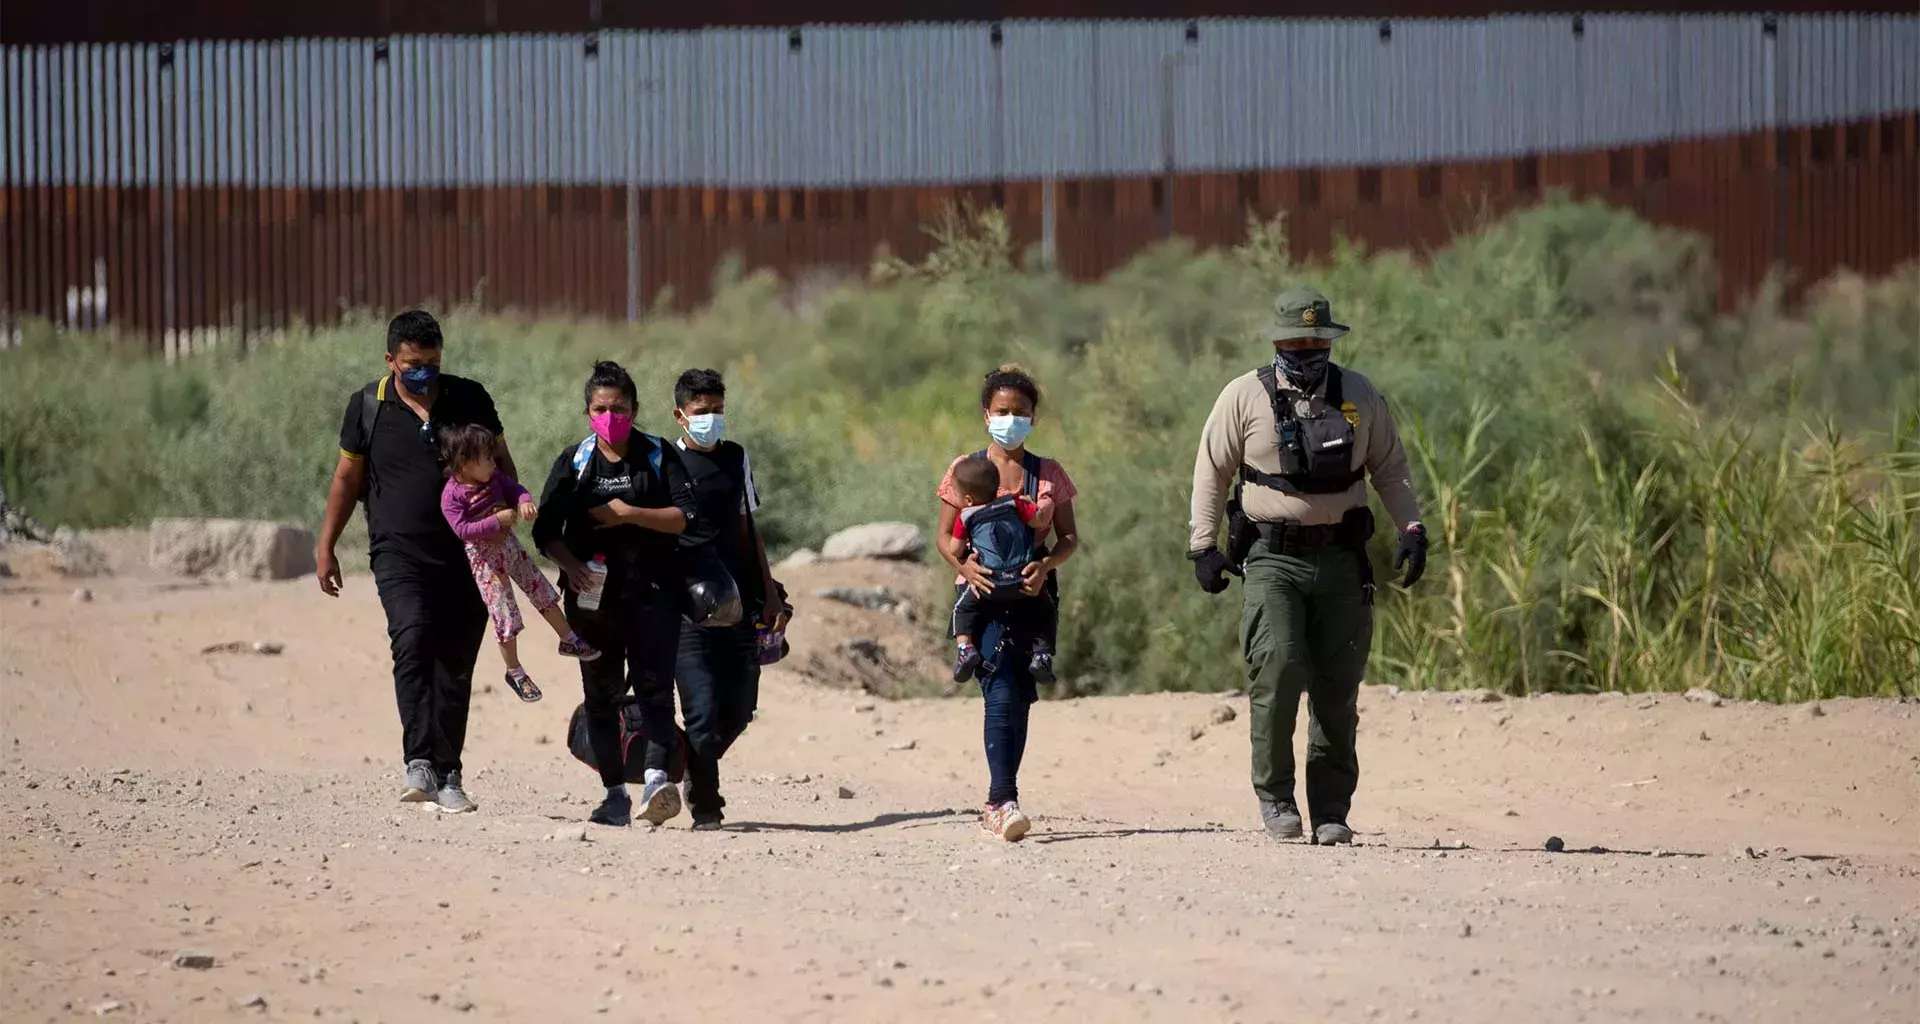 Refugios migratorios en México y los retos en pospandemia